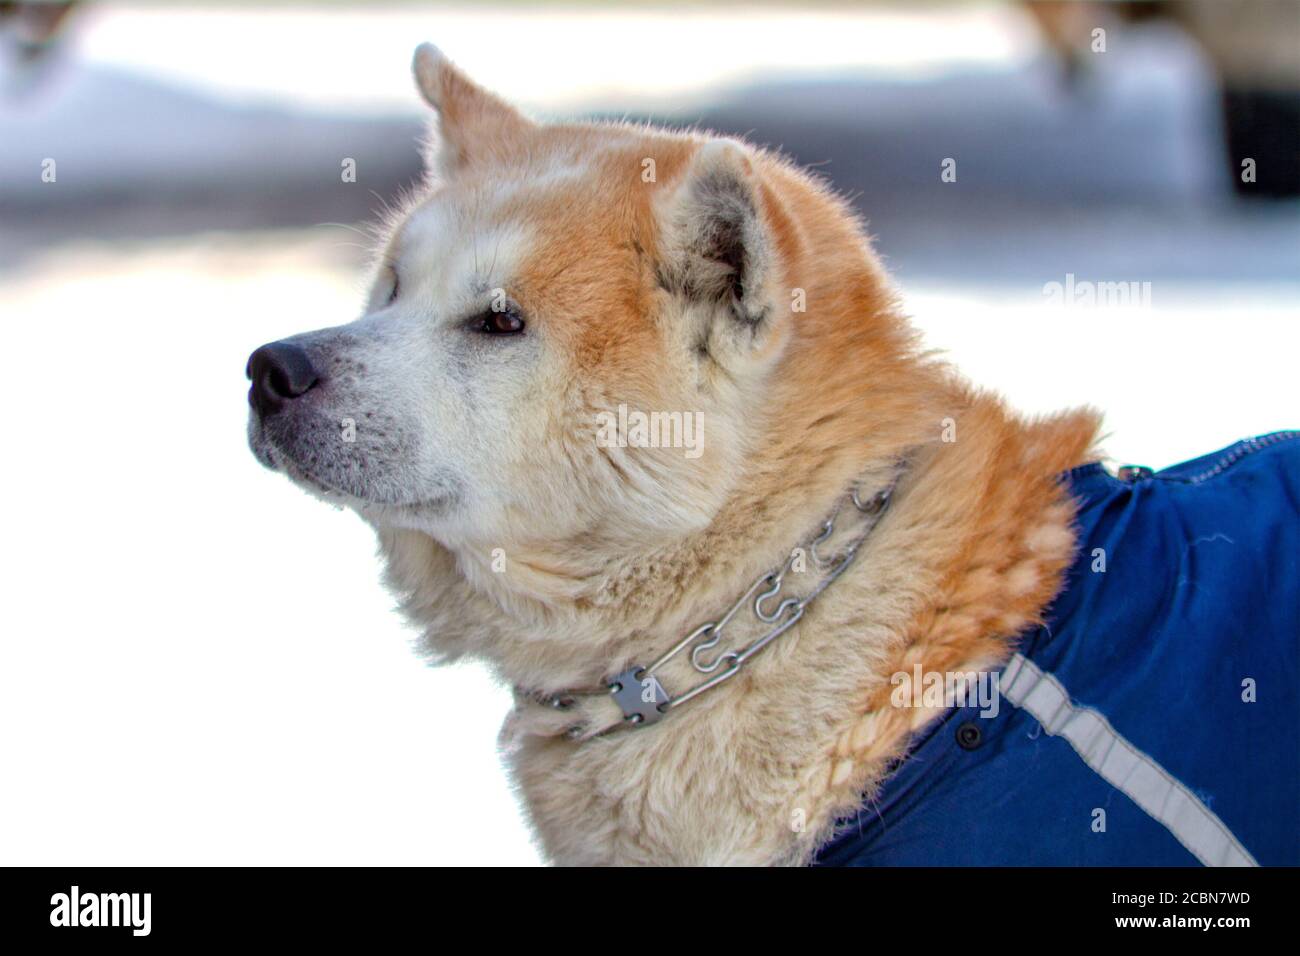 Portrait de la race de chien Akita inu avec collier en métal Banque D'Images